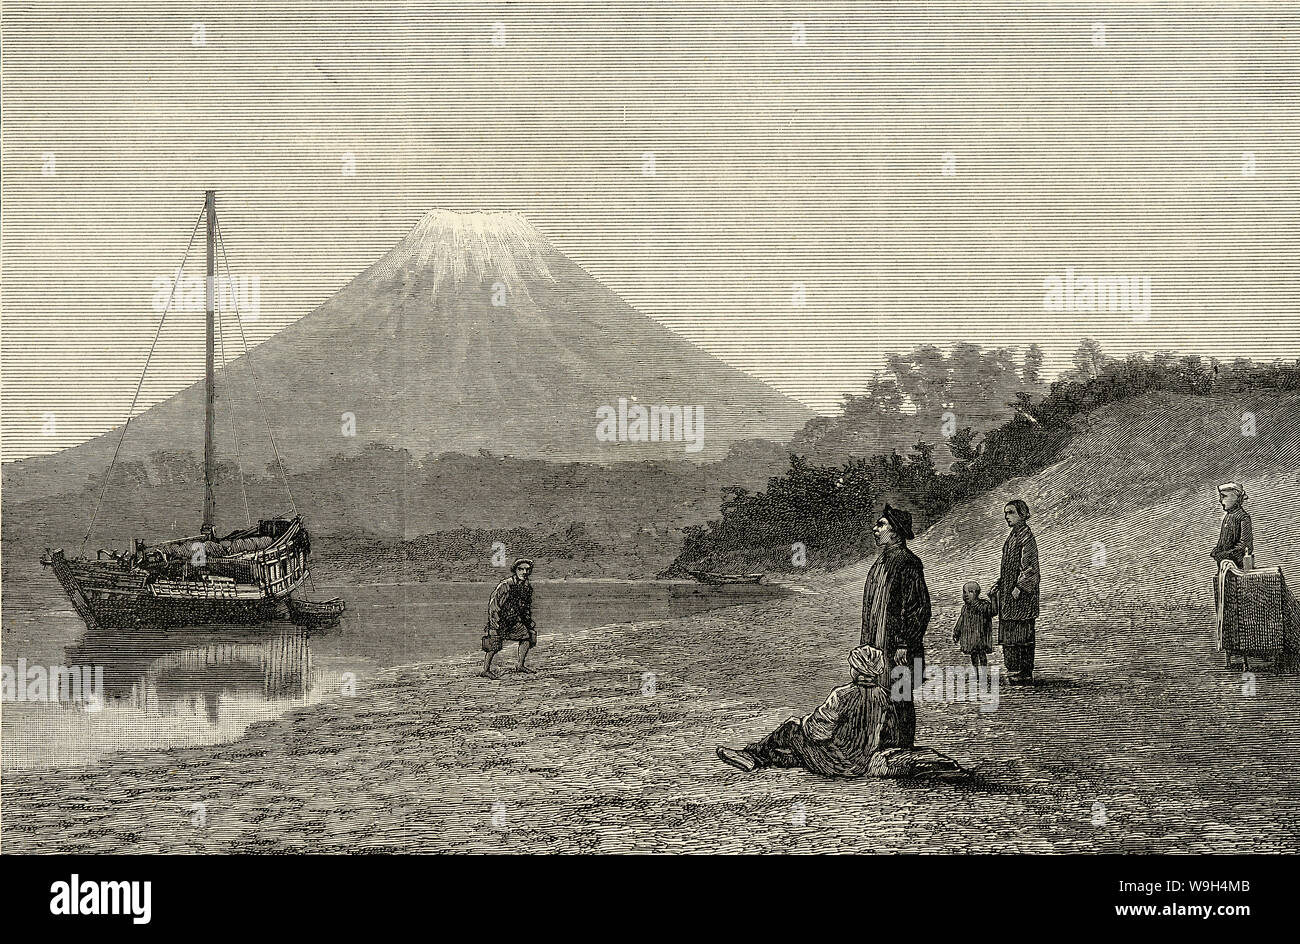 [ 1860 - Japon bateau japonais et le Mont Fuji ] - vue d'un sommet enneigé du Mont Fuji. En face est un bateau à voile. Publié dans le journal illustré hebdomadaire britannique le graphique le 19 mars 1864 (1) Genji. 19e siècle vintage illustration de journal. Banque D'Images